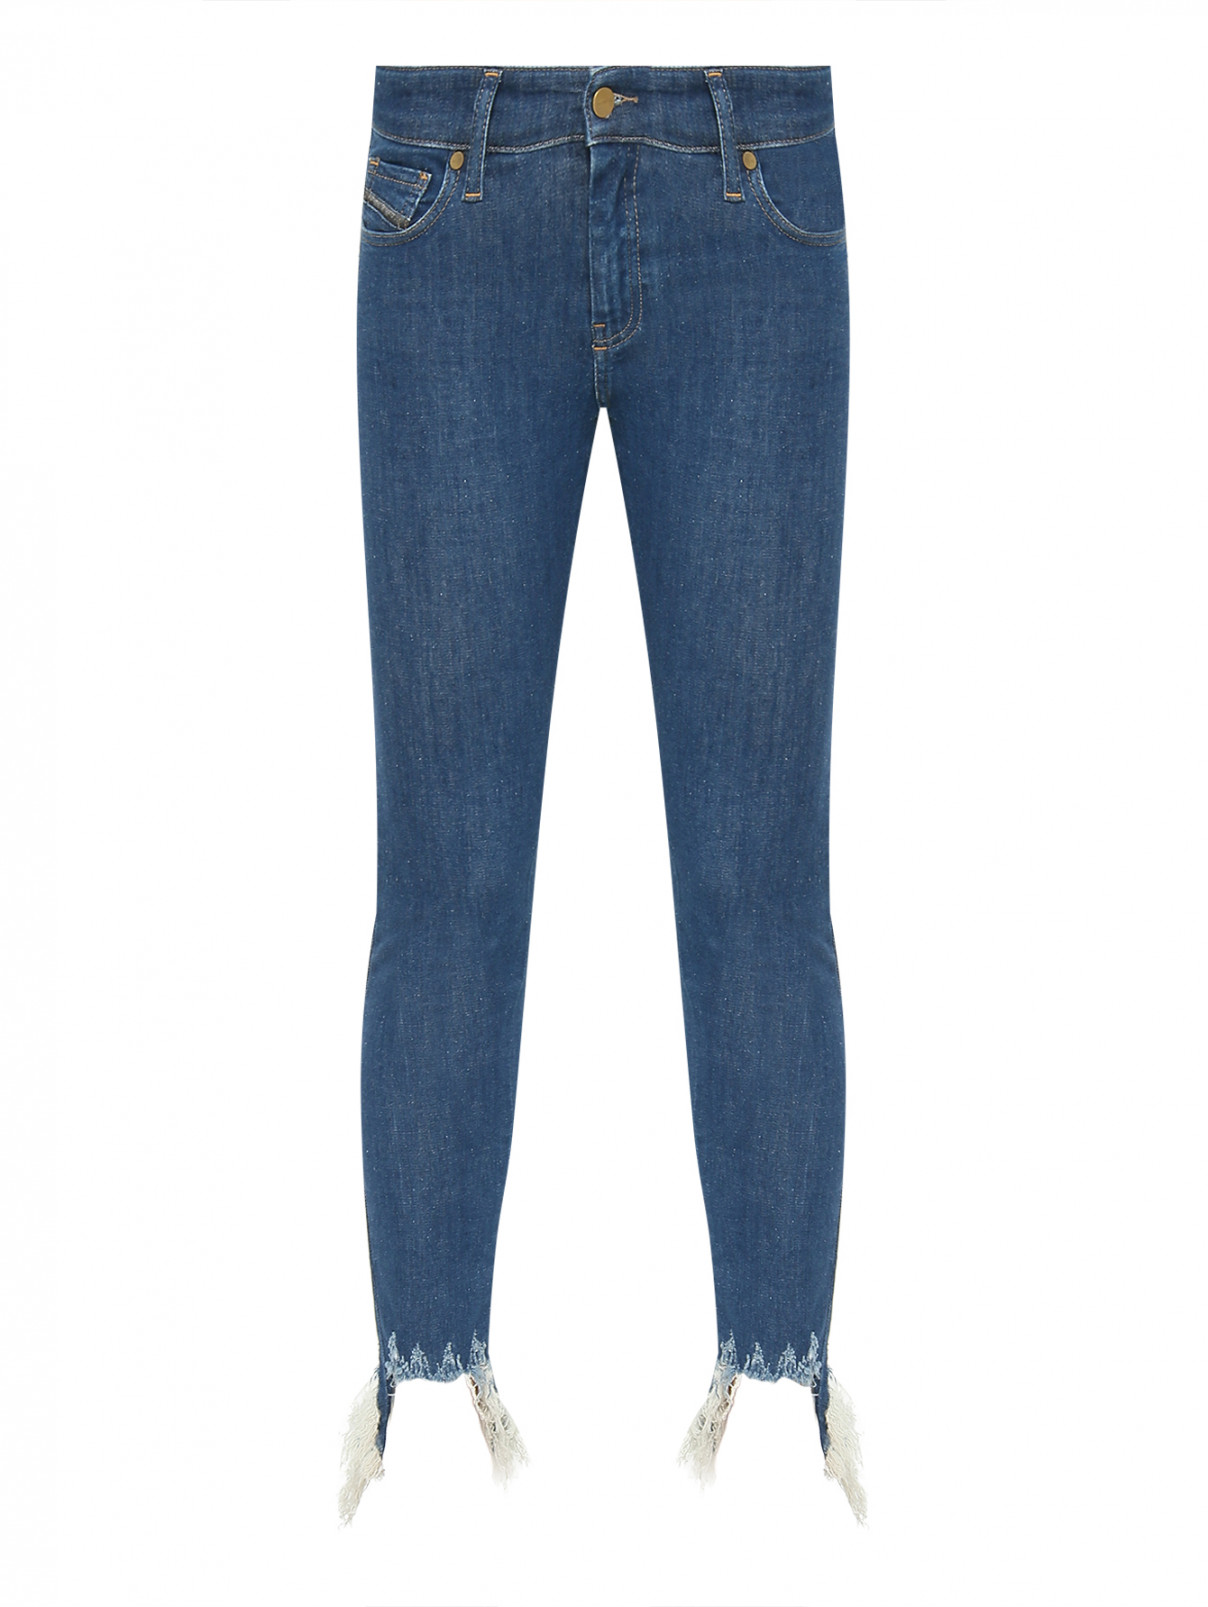 Однотонные джинсы с бахромой Diesel  –  Общий вид  – Цвет:  Синий